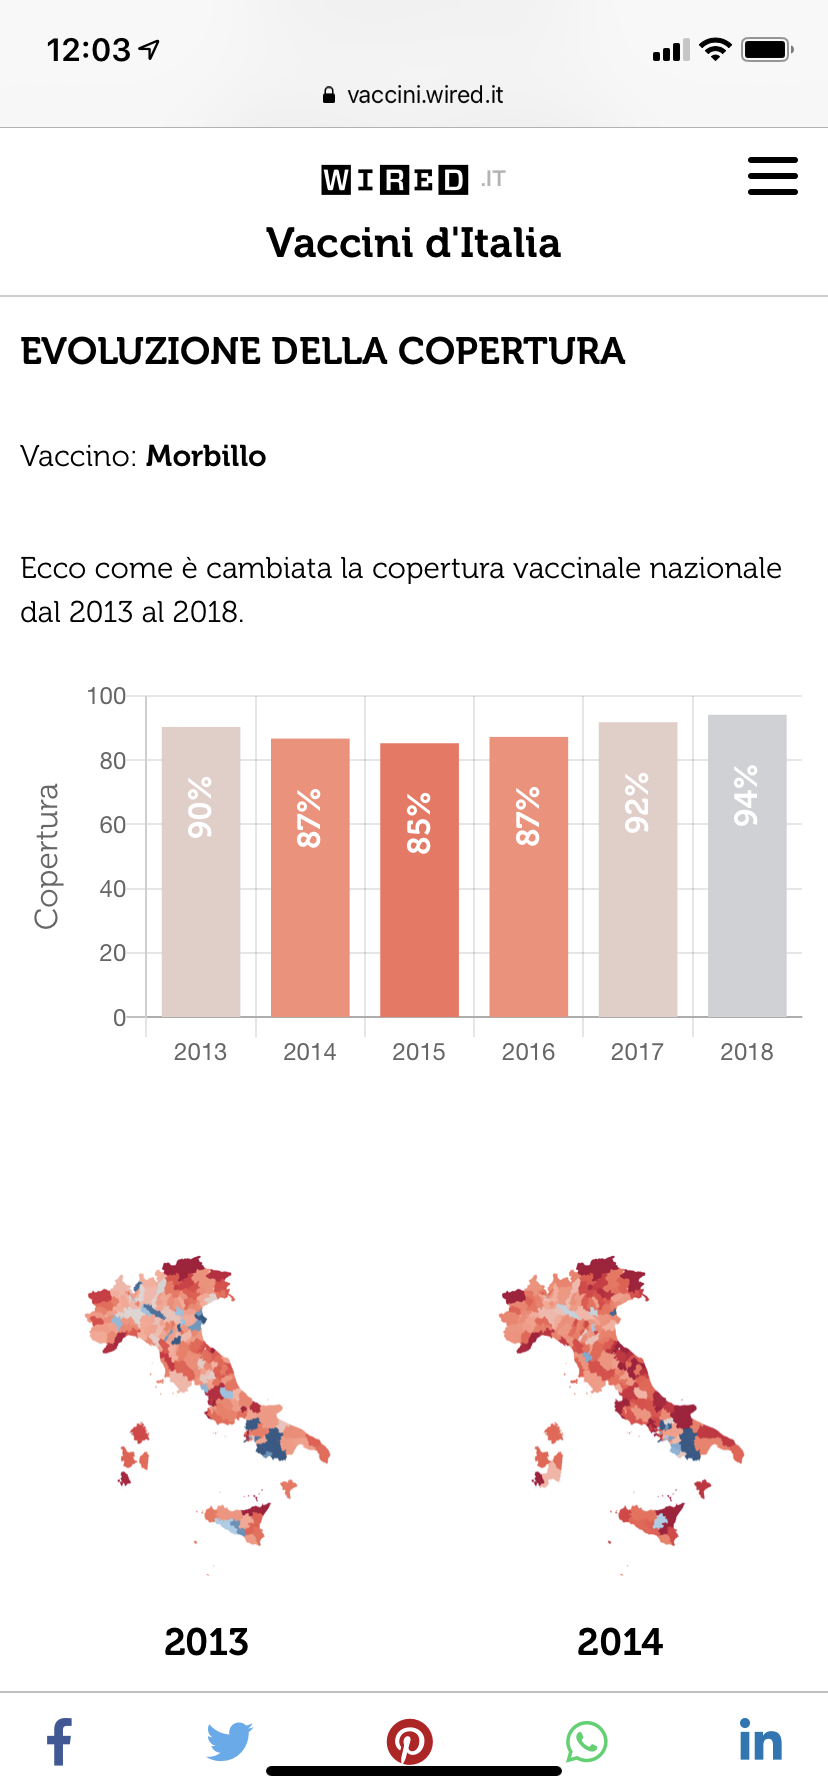 WIRED Vaccini d'Italia 